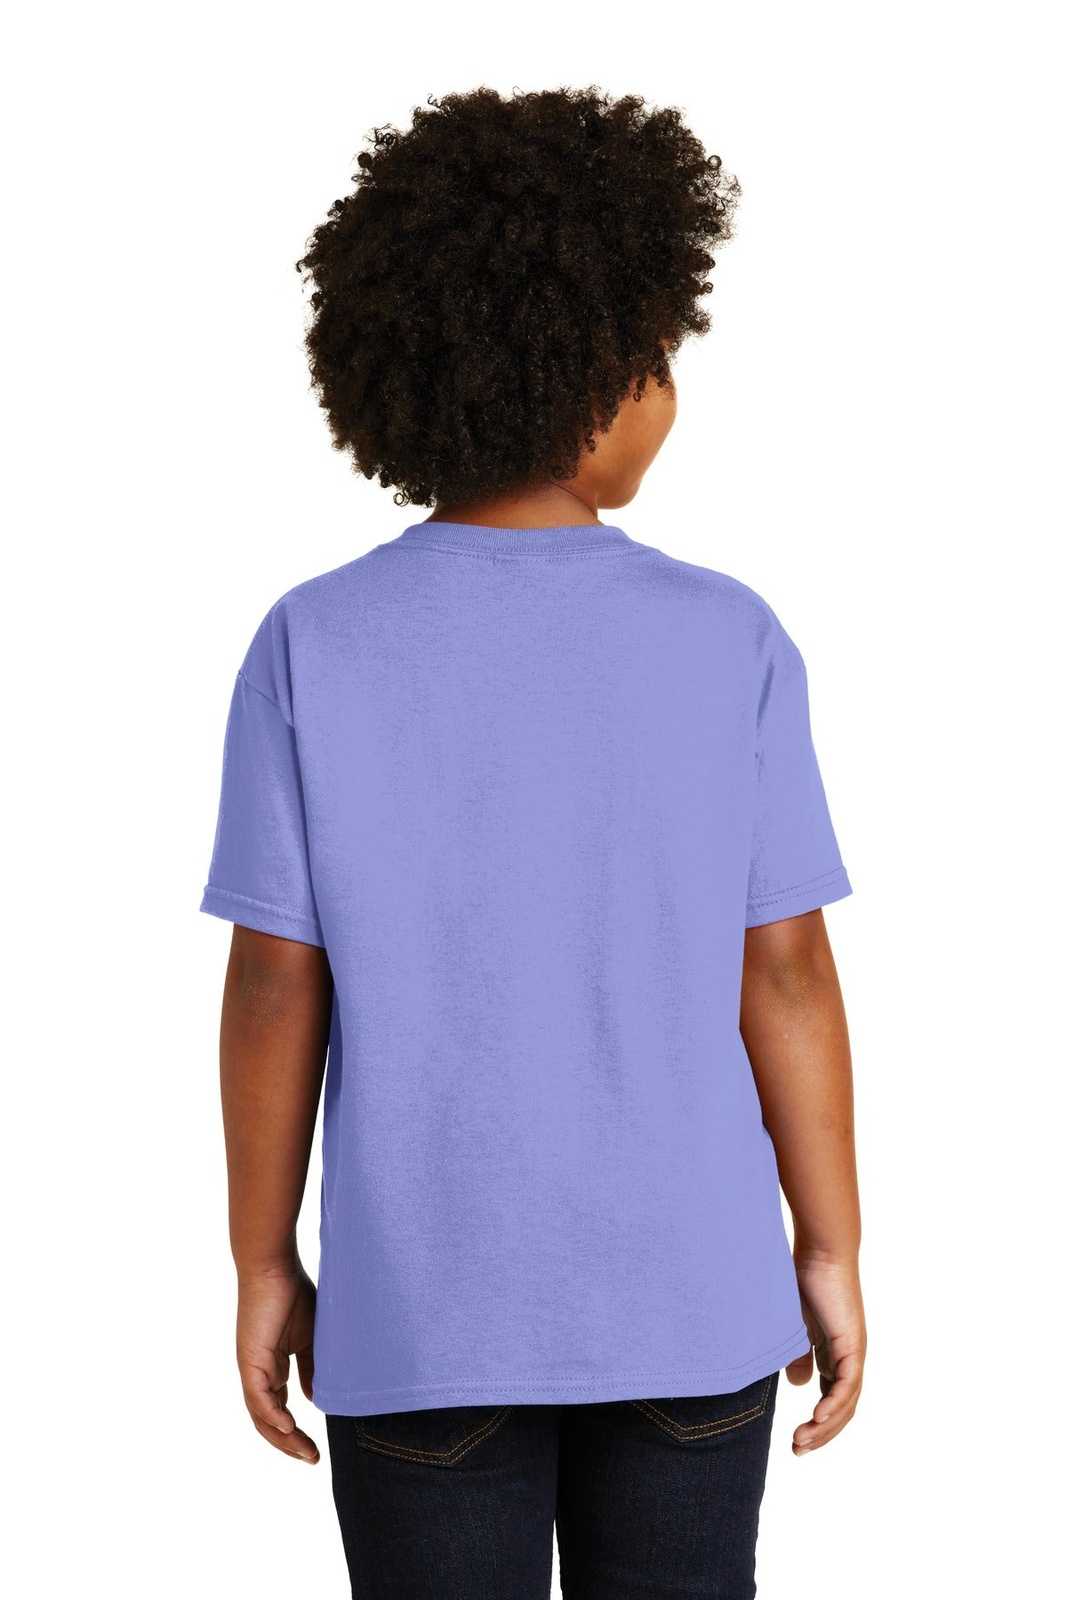 Gildan 5000B Youth Heavy Cotton 100% Cotton T-Shirt - Violet - HIT a Double